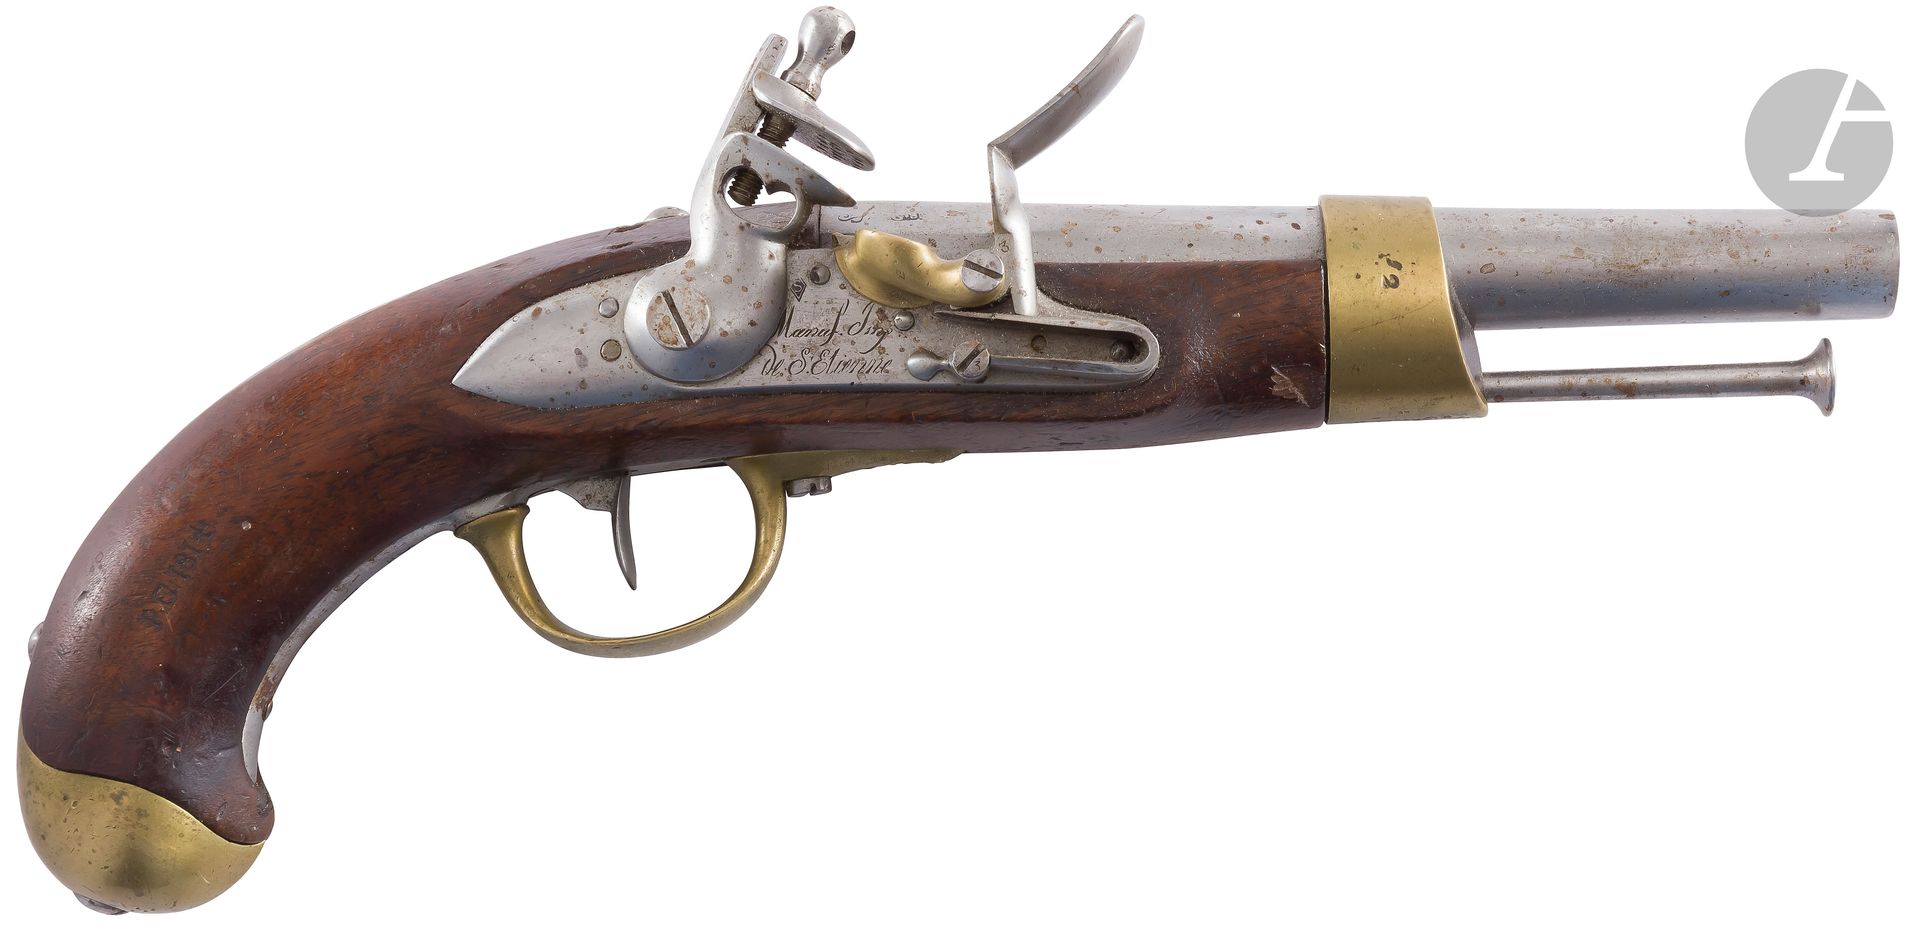 Null Pistola de pomo modelo An 13,
cañón redondo con rayo, fechada "1811" y esta&hellip;